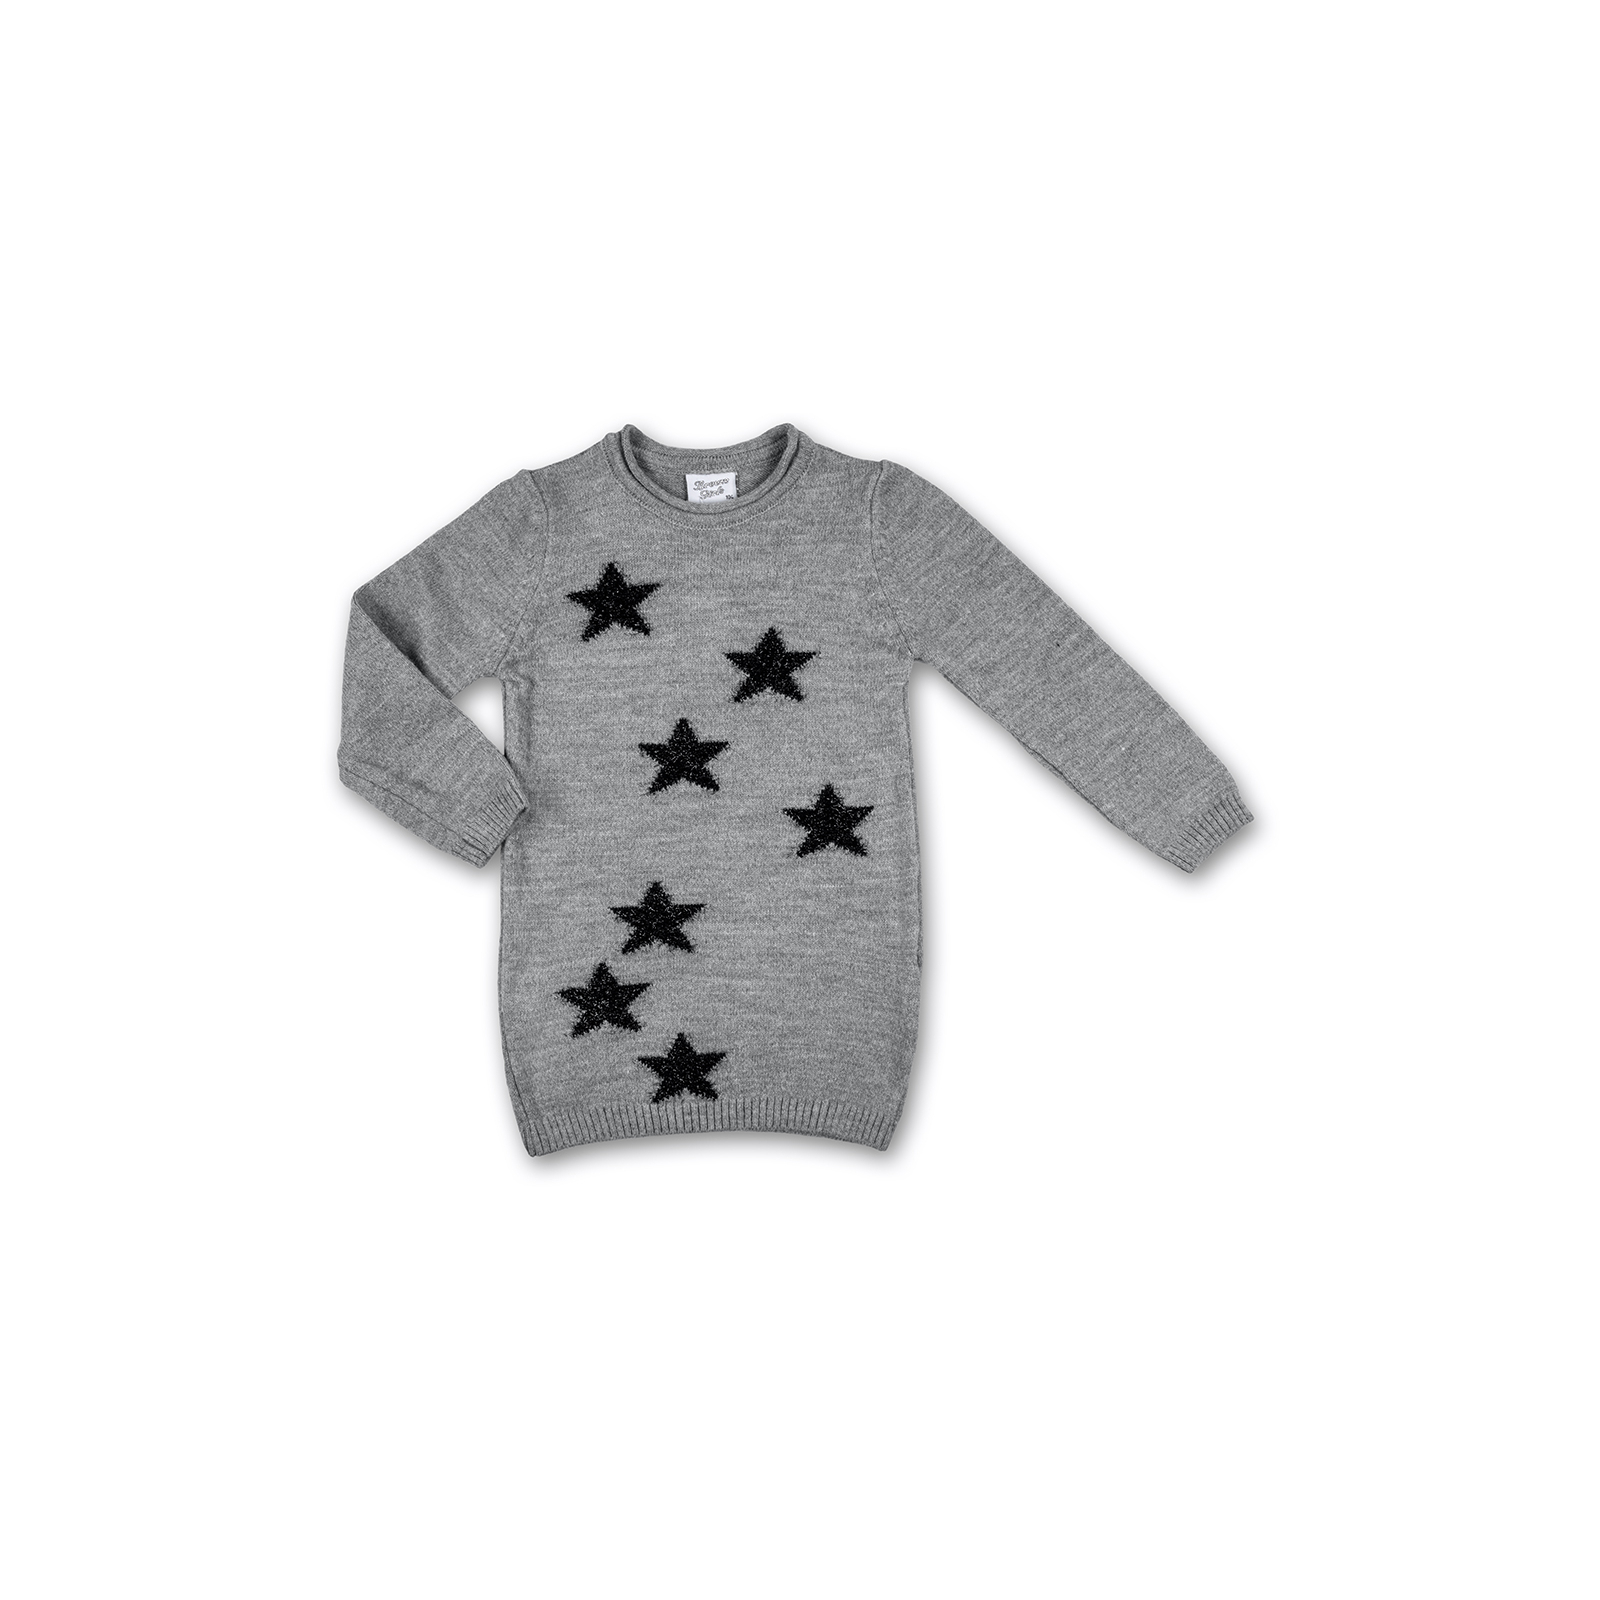 Кофта Breeze джемпер серый меланж со звездочками (T-104-116G-gray)